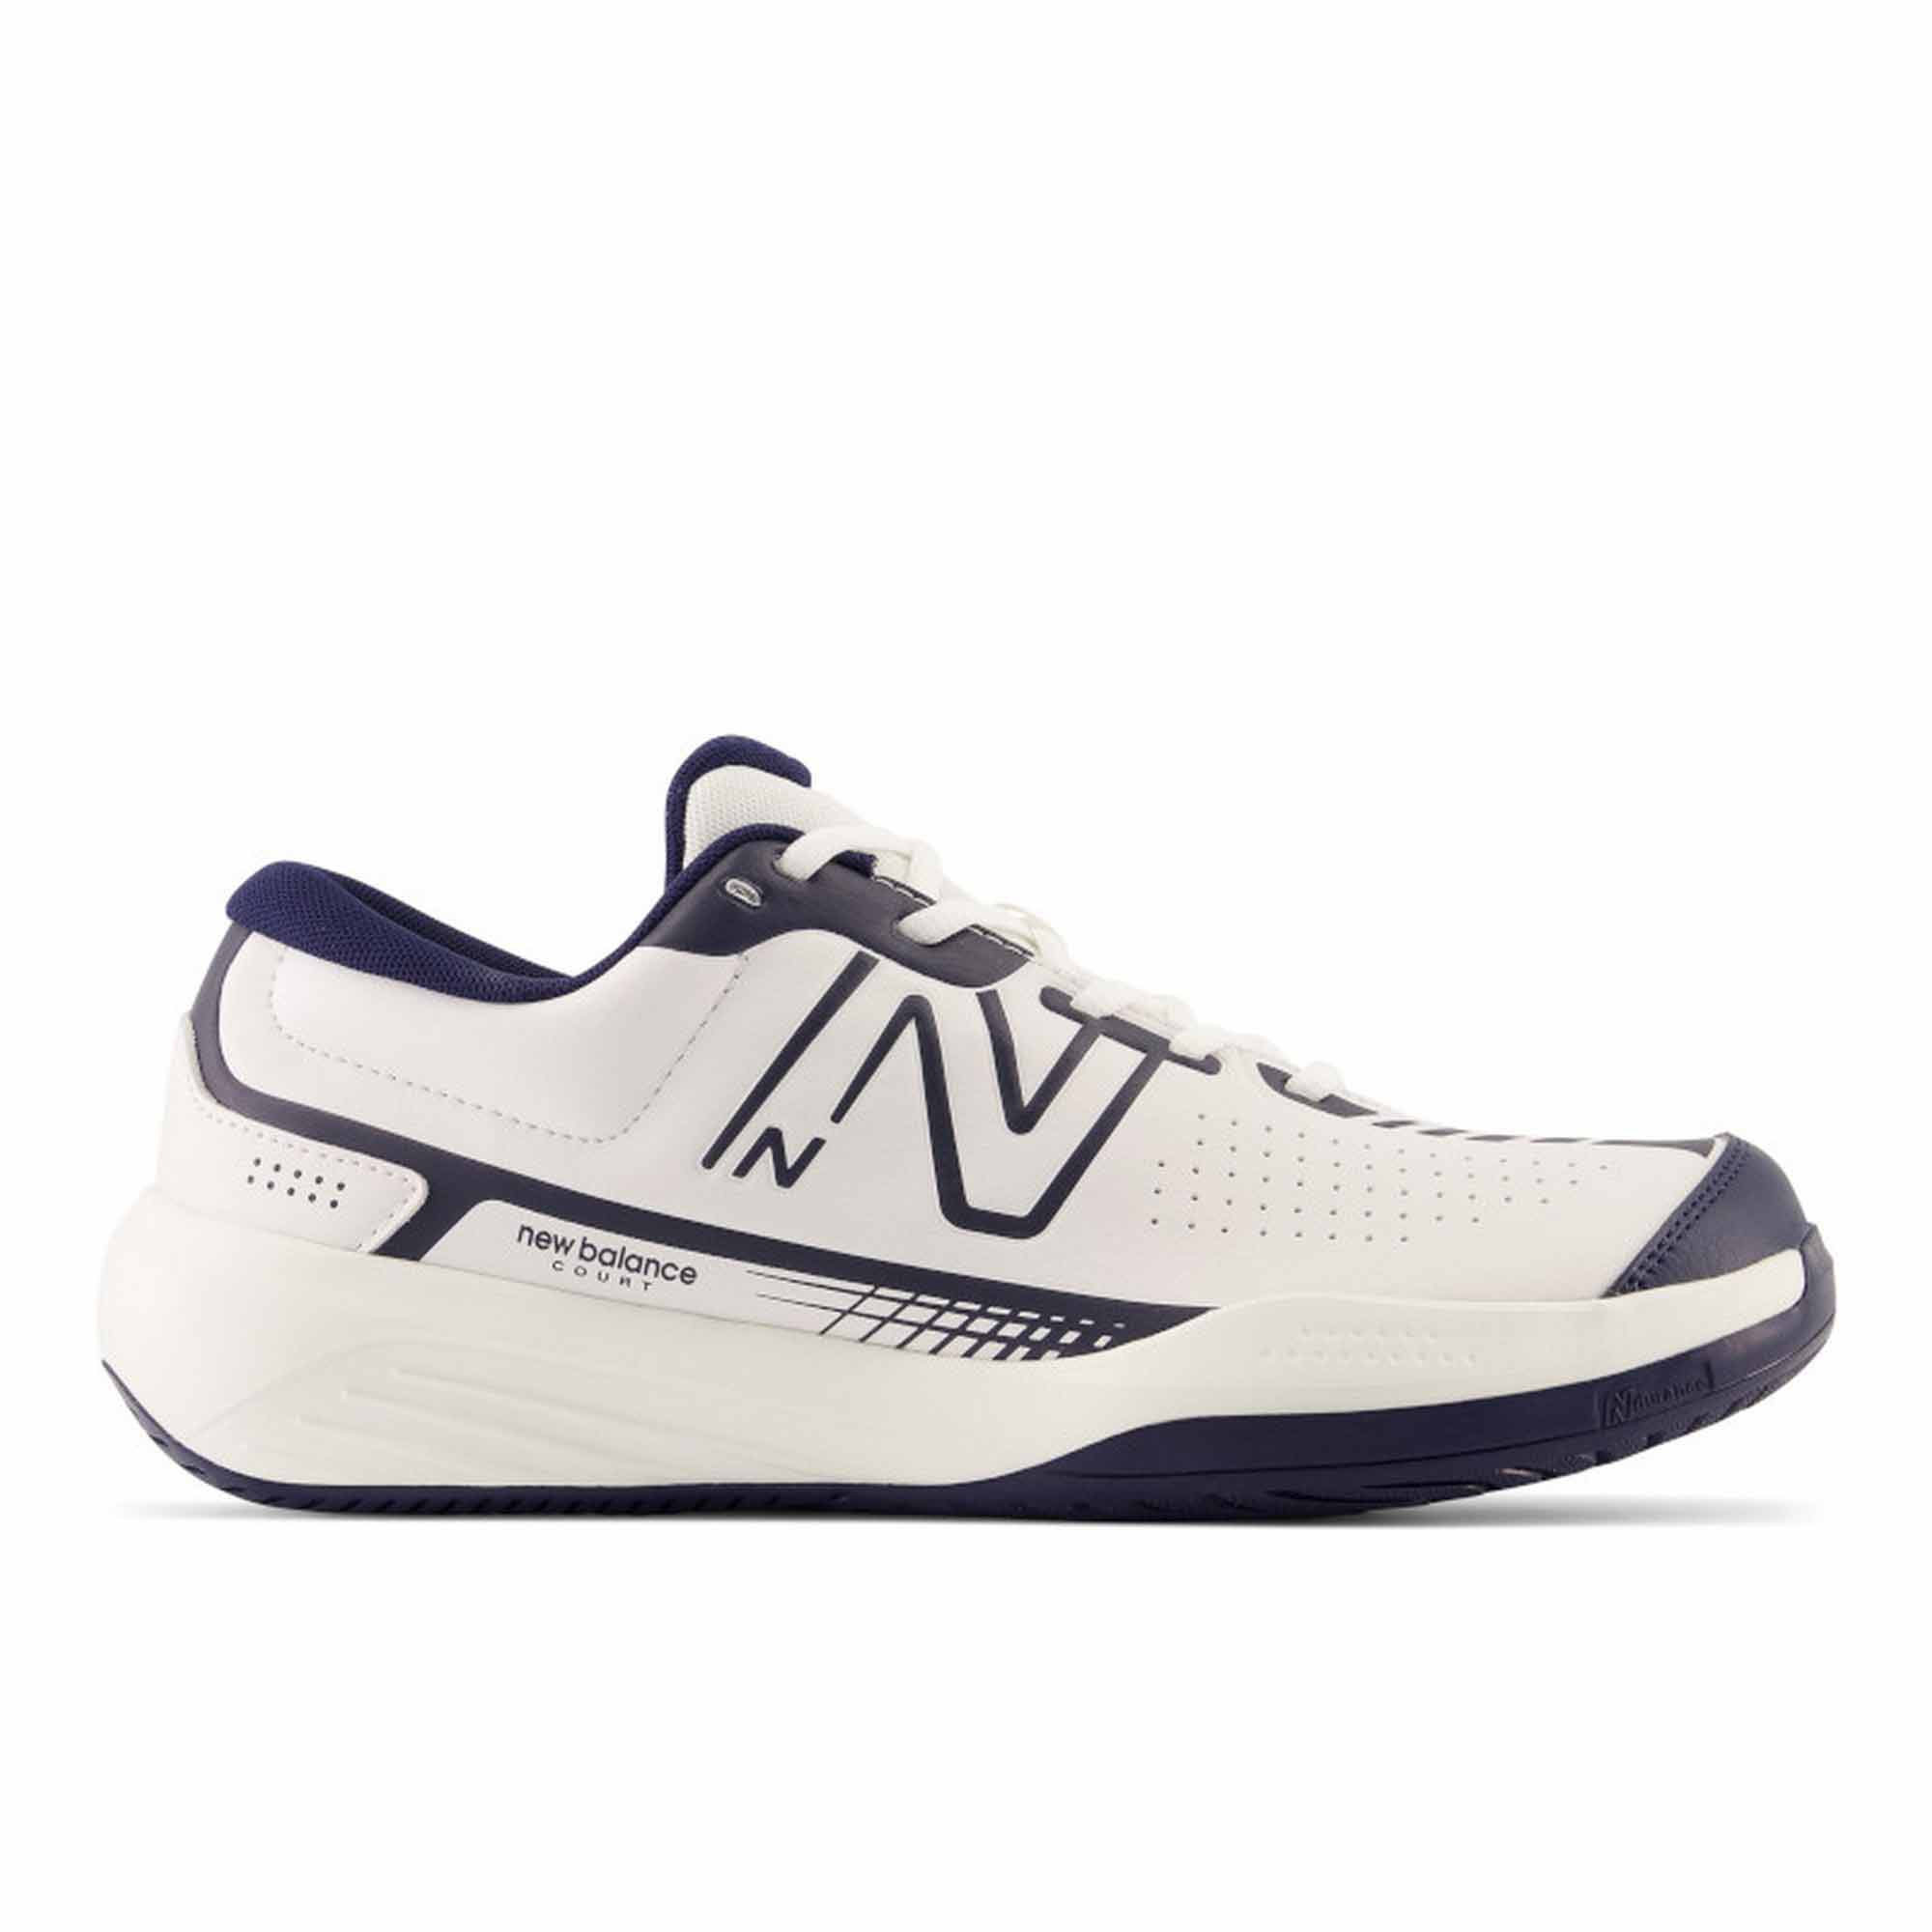 New Balance Mens 696v5 4E Tennis Shoes